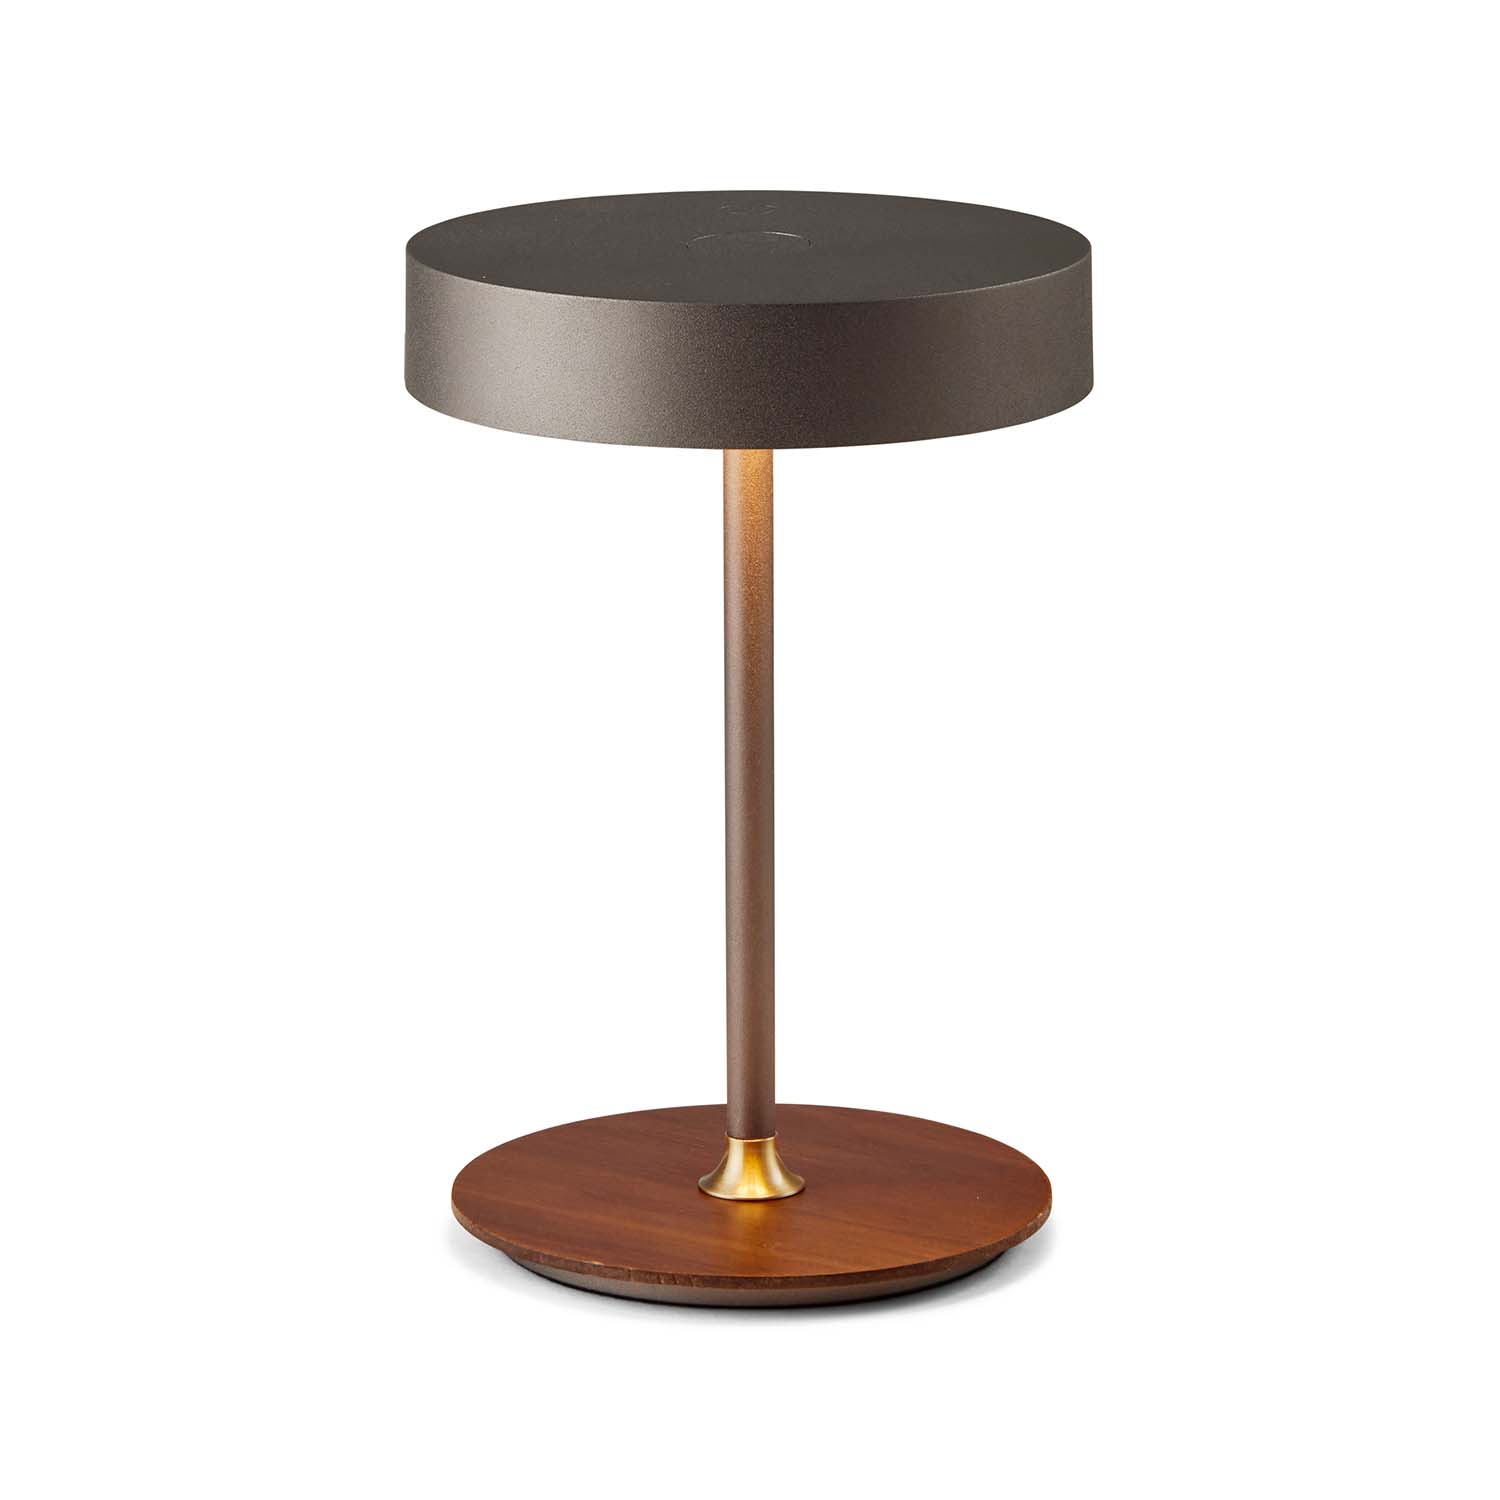 ON THE MOVE - Lampe de table nomade design sans-fil orientable